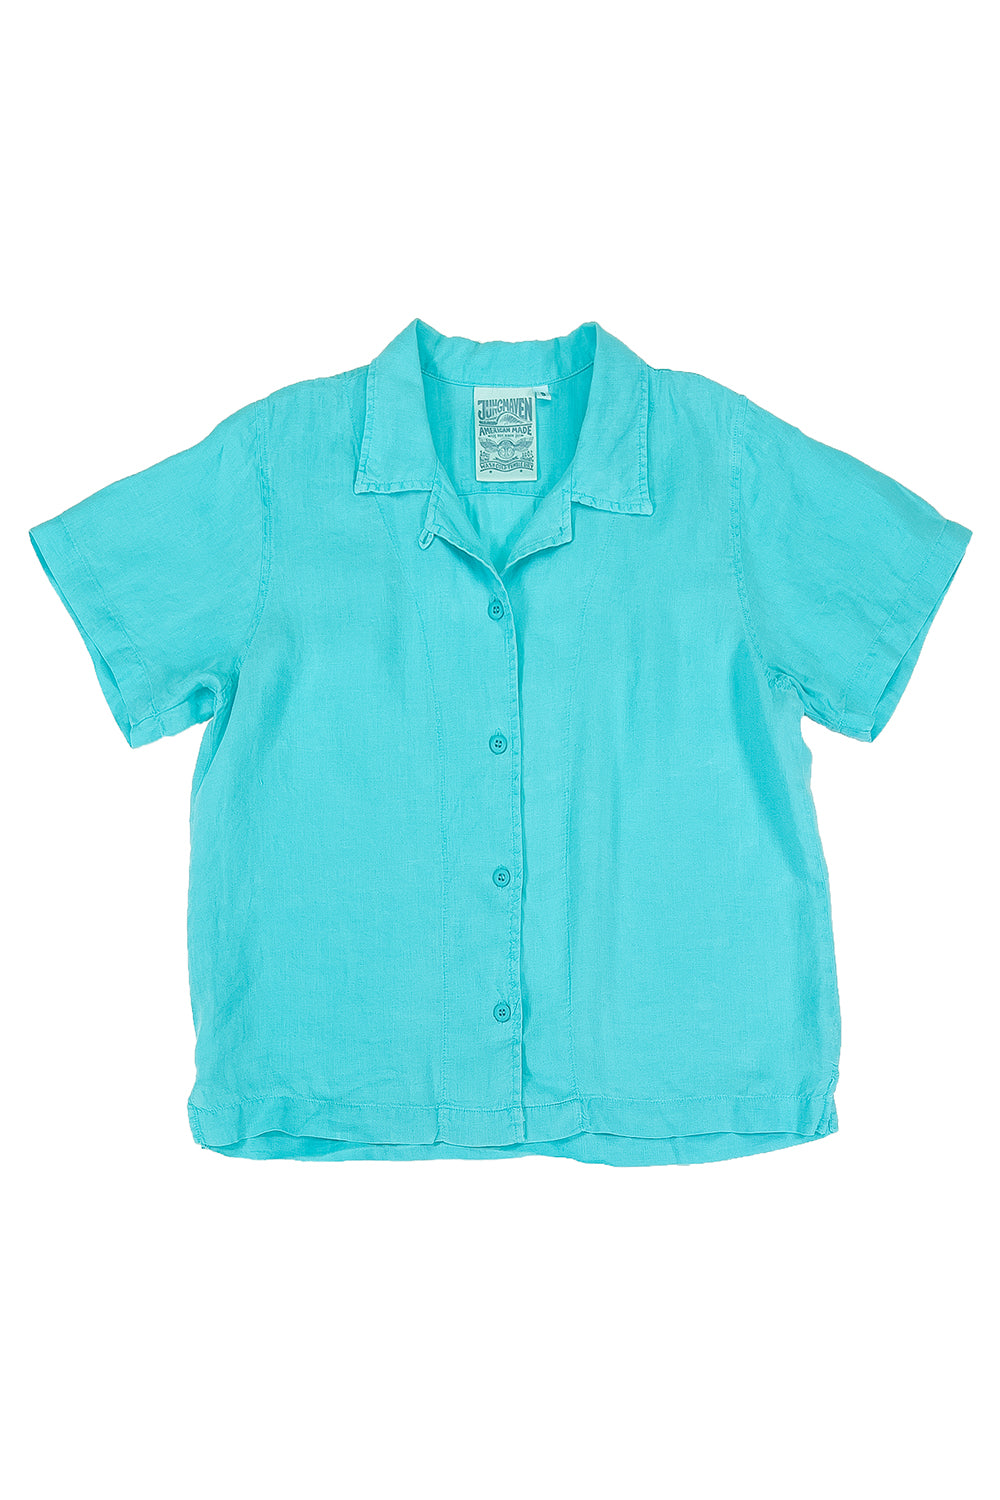 Tucson Shirt | Jungmaven Hemp Clothing & Accessories / Color: Caribbean Blue